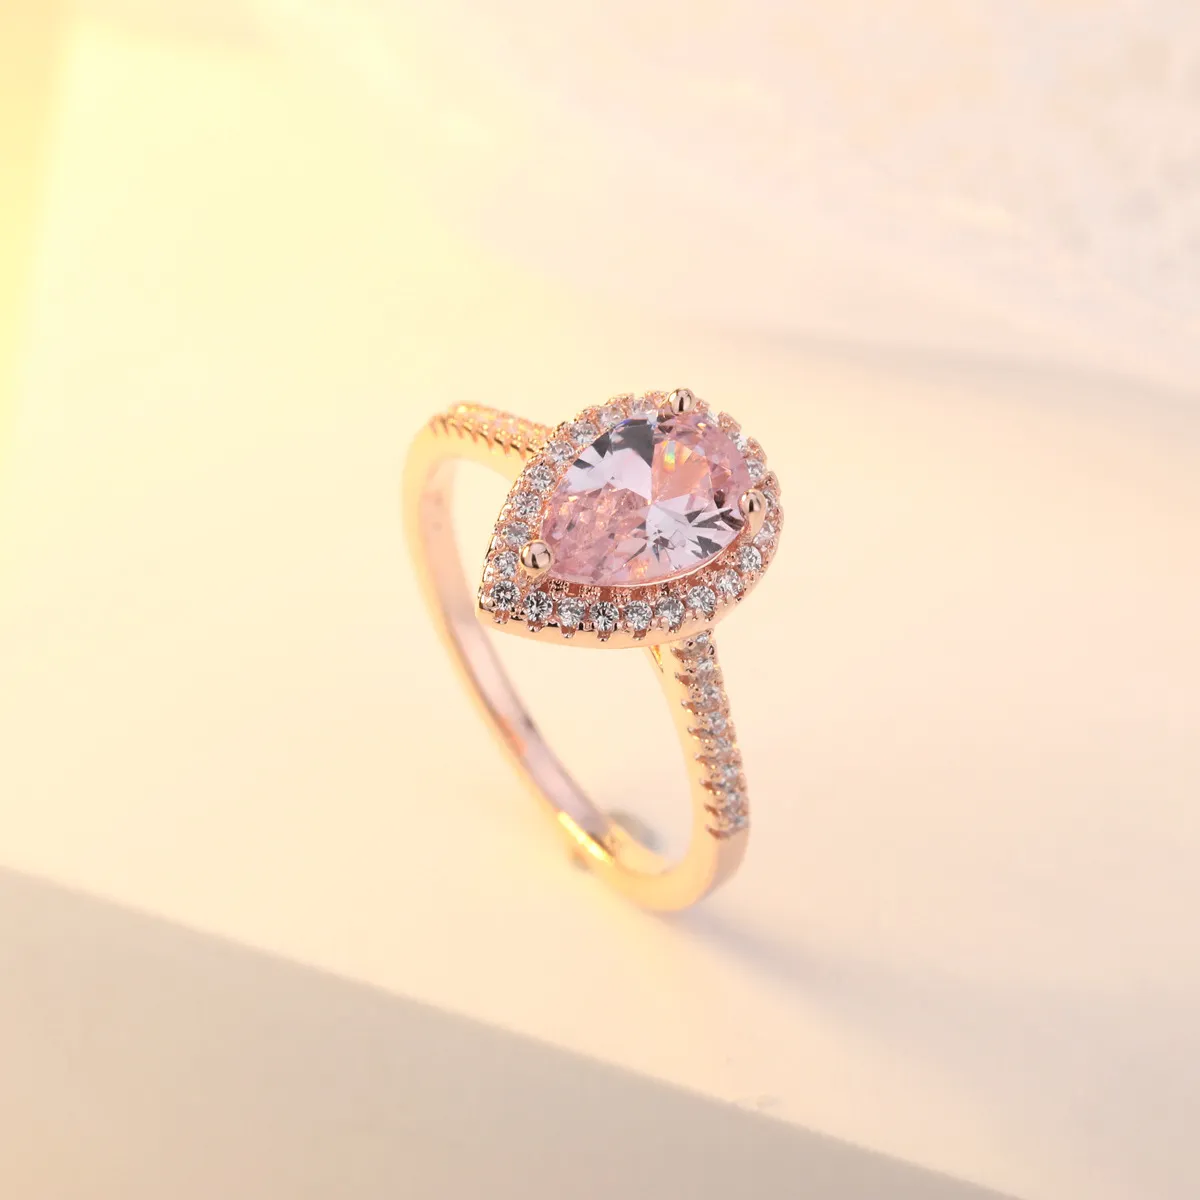 OMHXZJ Tutta la moda europea donna ragazza festa regalo di nozze goccia d'acqua rosa zircone bianco anello in oro rosa 18KT RR5981847484